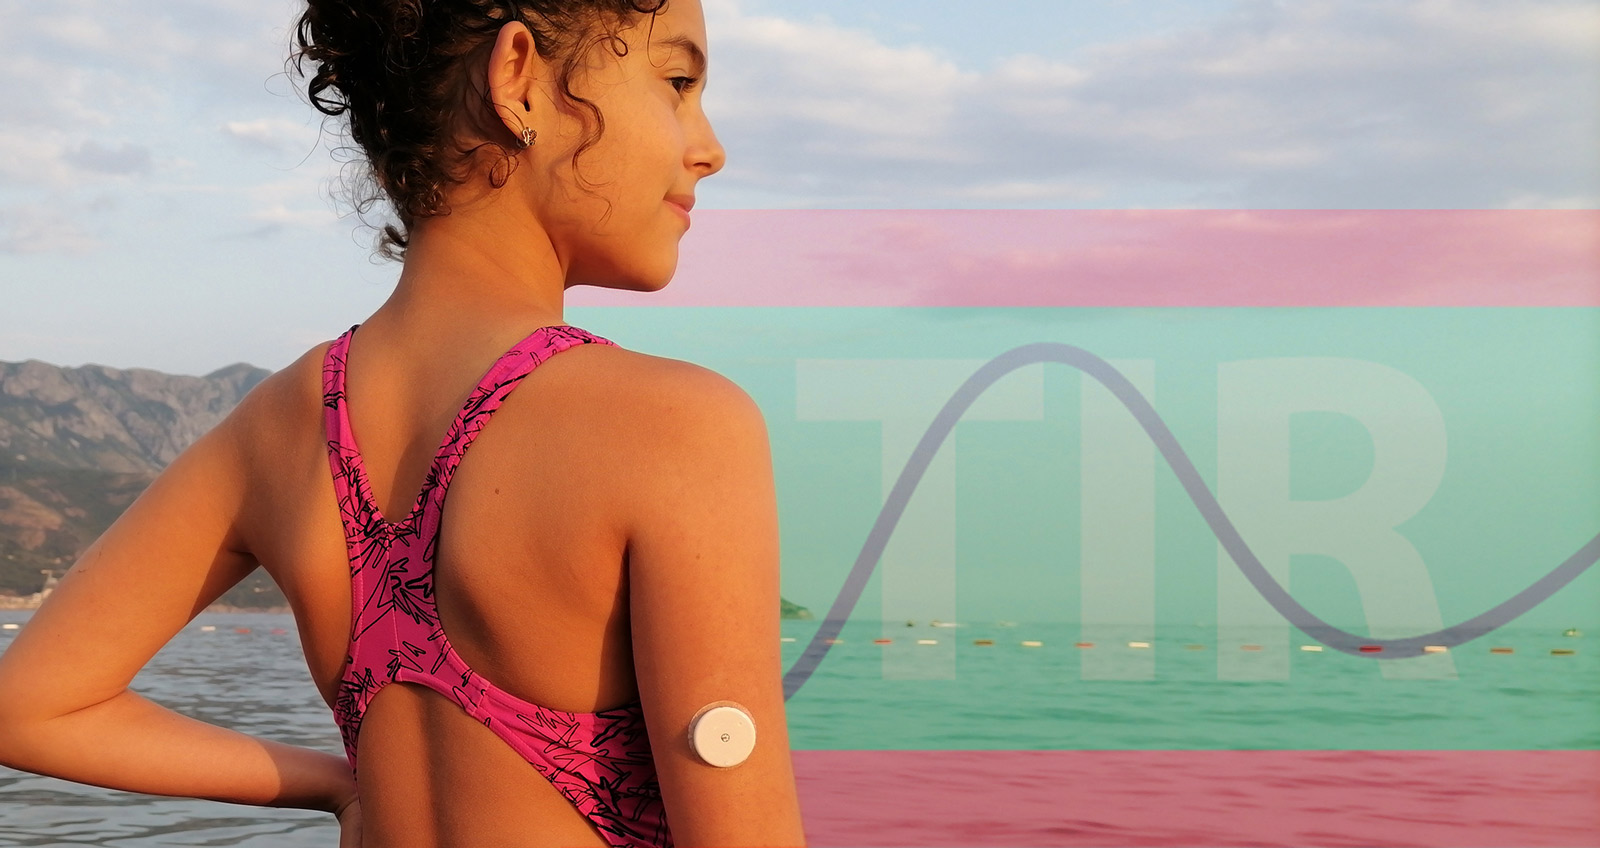 Ein junges Mädchen steht im Badeanzug am Strand und guckt aufs Wasser. Am Arm trägt sie einen rtCGM-Sensor, im Hintergrund ist ein Blutzuckerverlauf der komplett im Zielbereich verläuft zu sehen